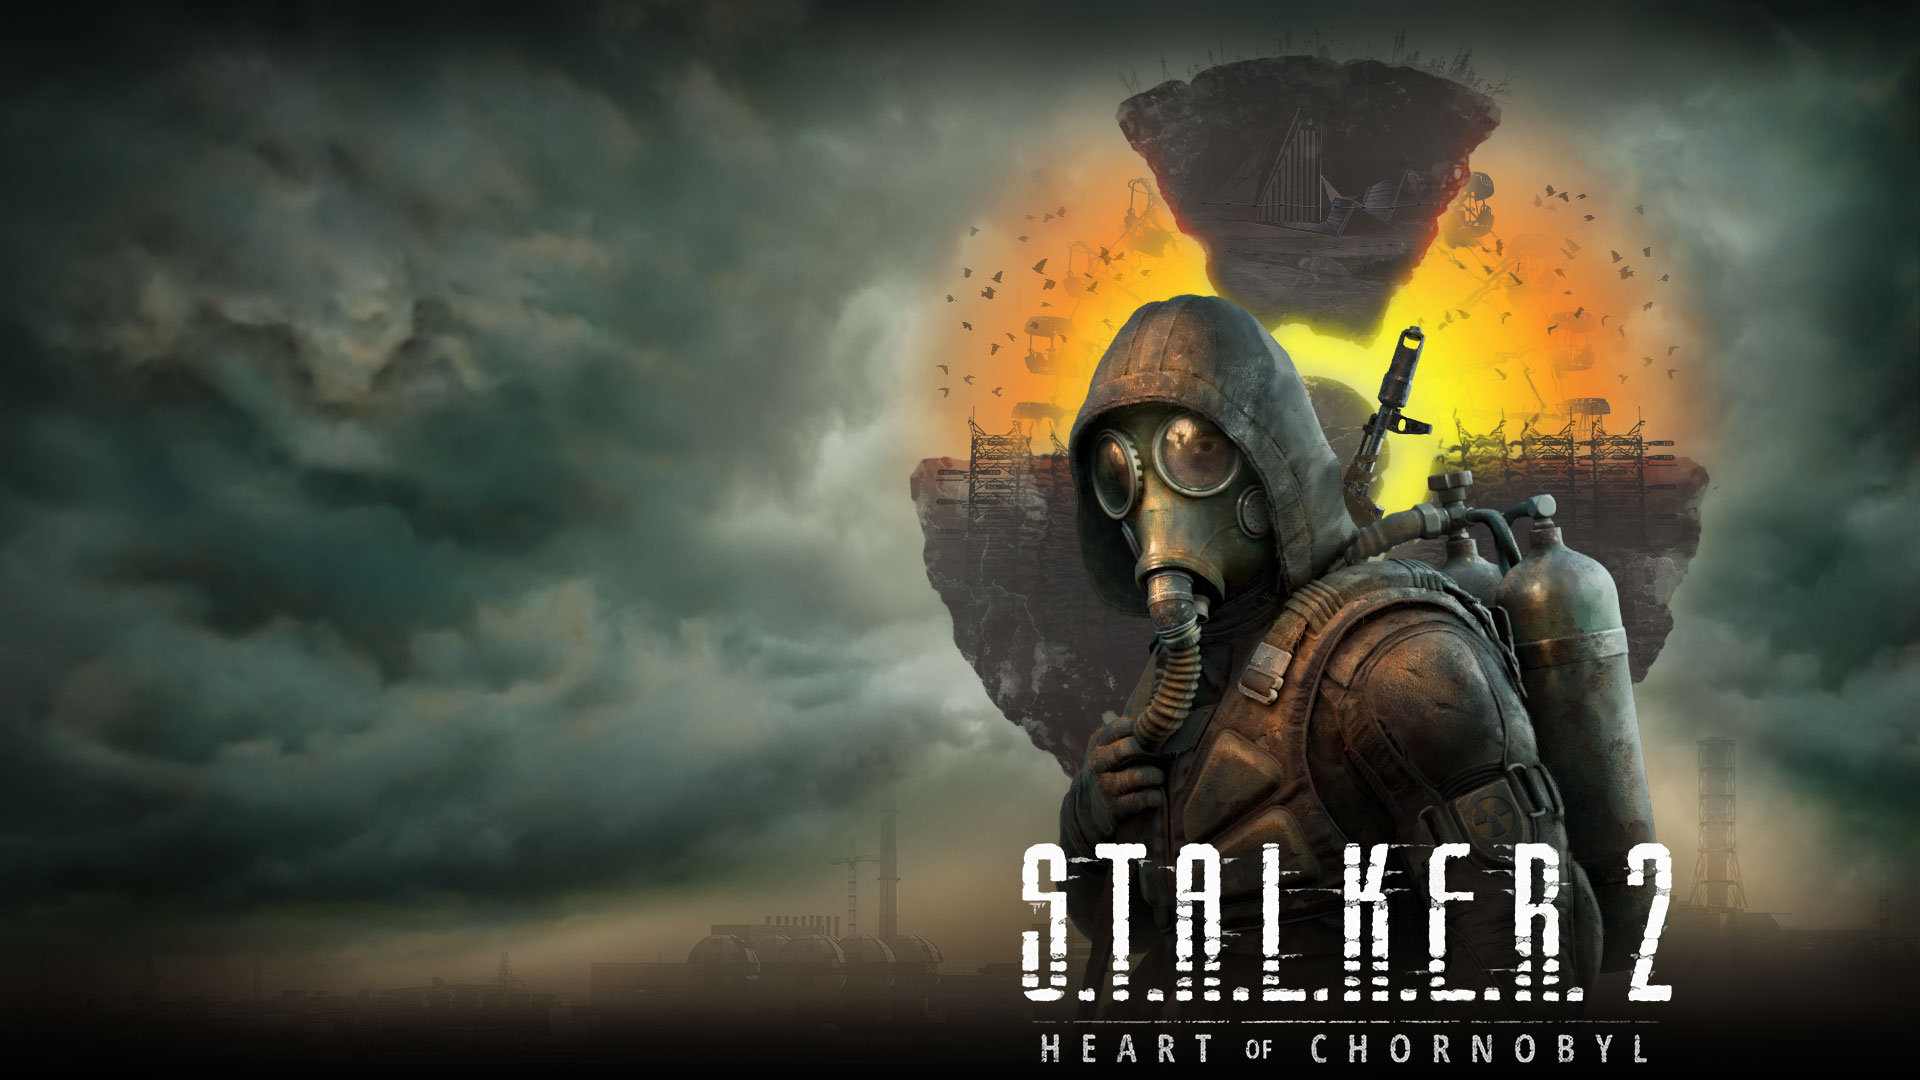 Stalker 2 Heart of Chornobyl, en karakter står foran et svævende landskab med skyer og røg i luften.